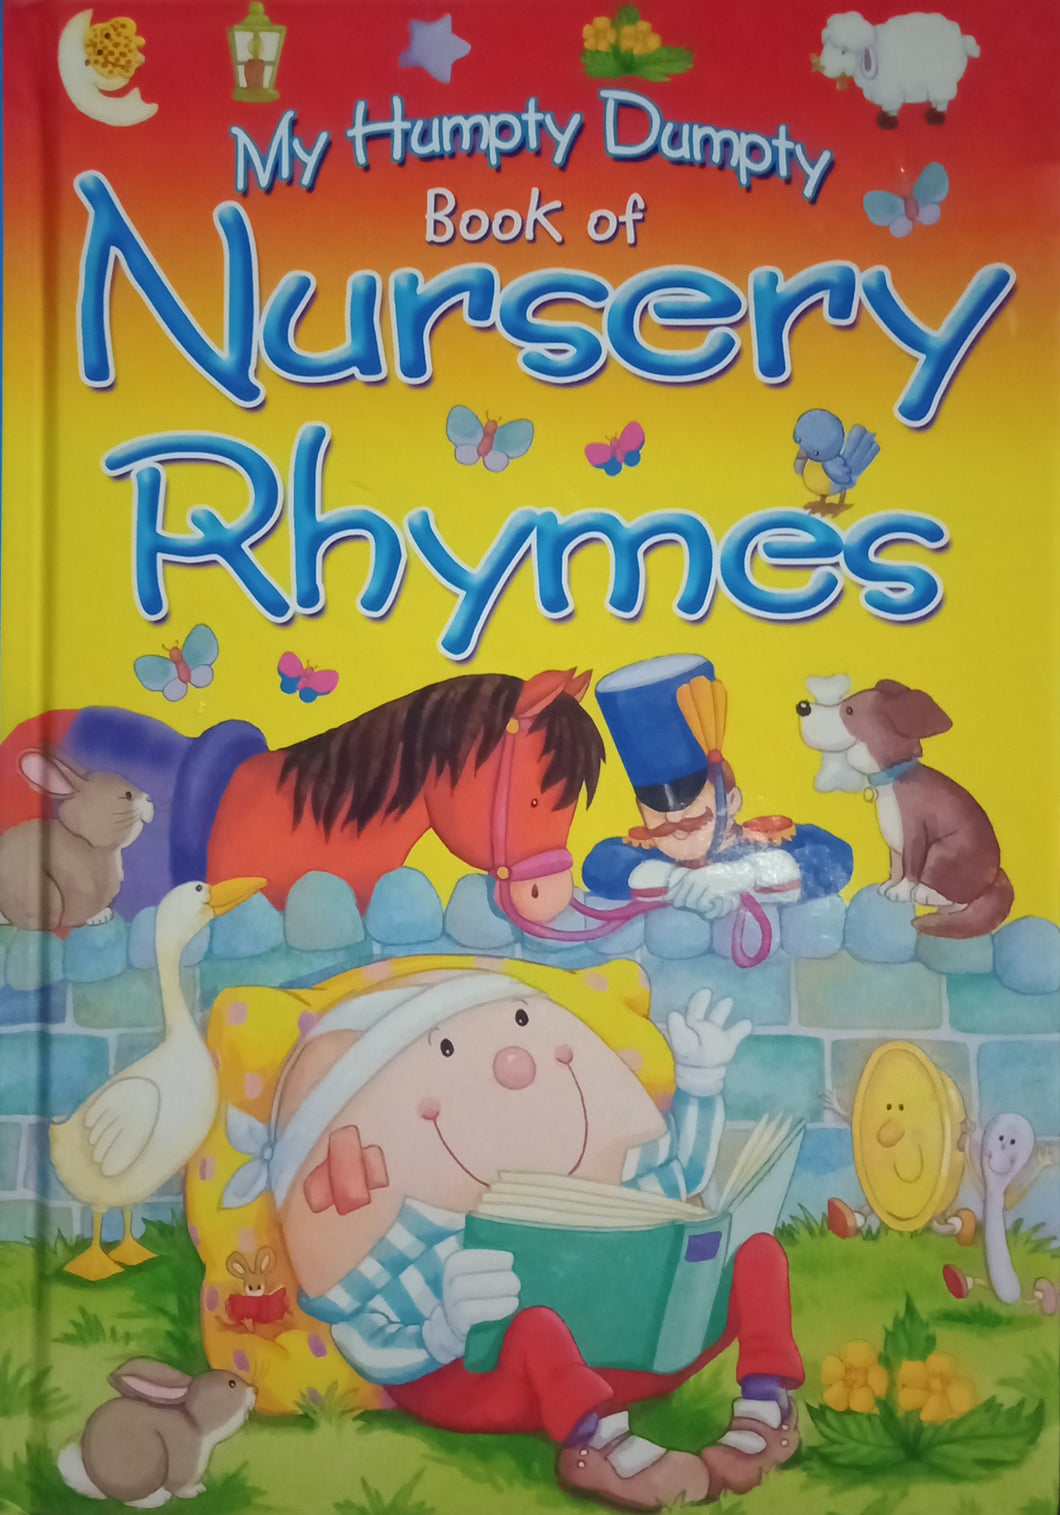 My Humpty Dumpty Book Of Nursery Rhymes by Brown Watson